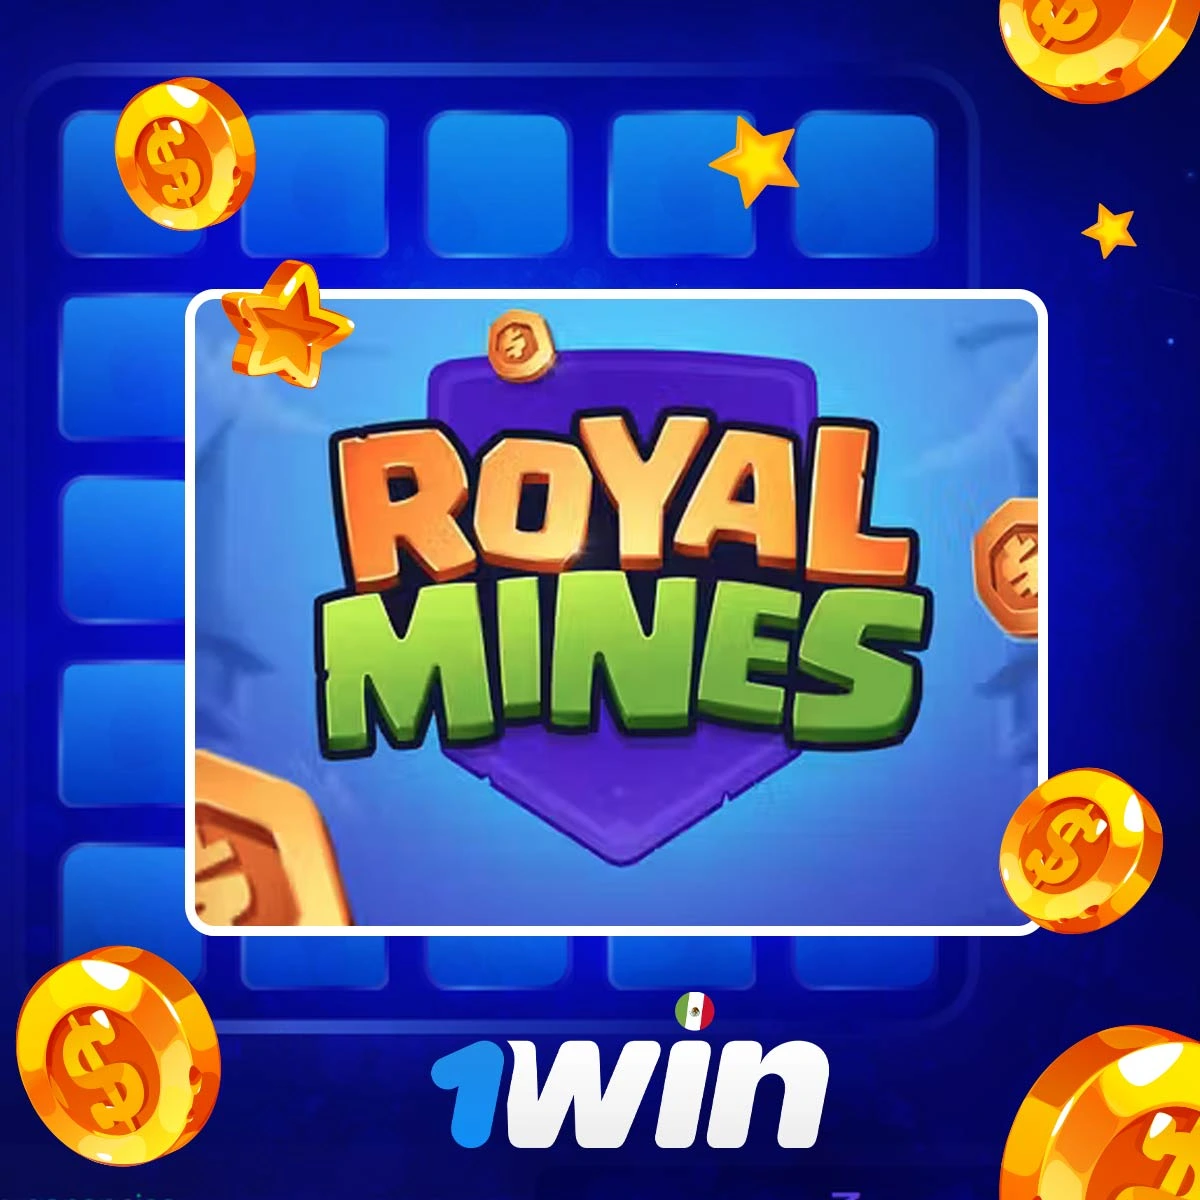 ¿Cómo se juega al Royal Mines de 1Win?